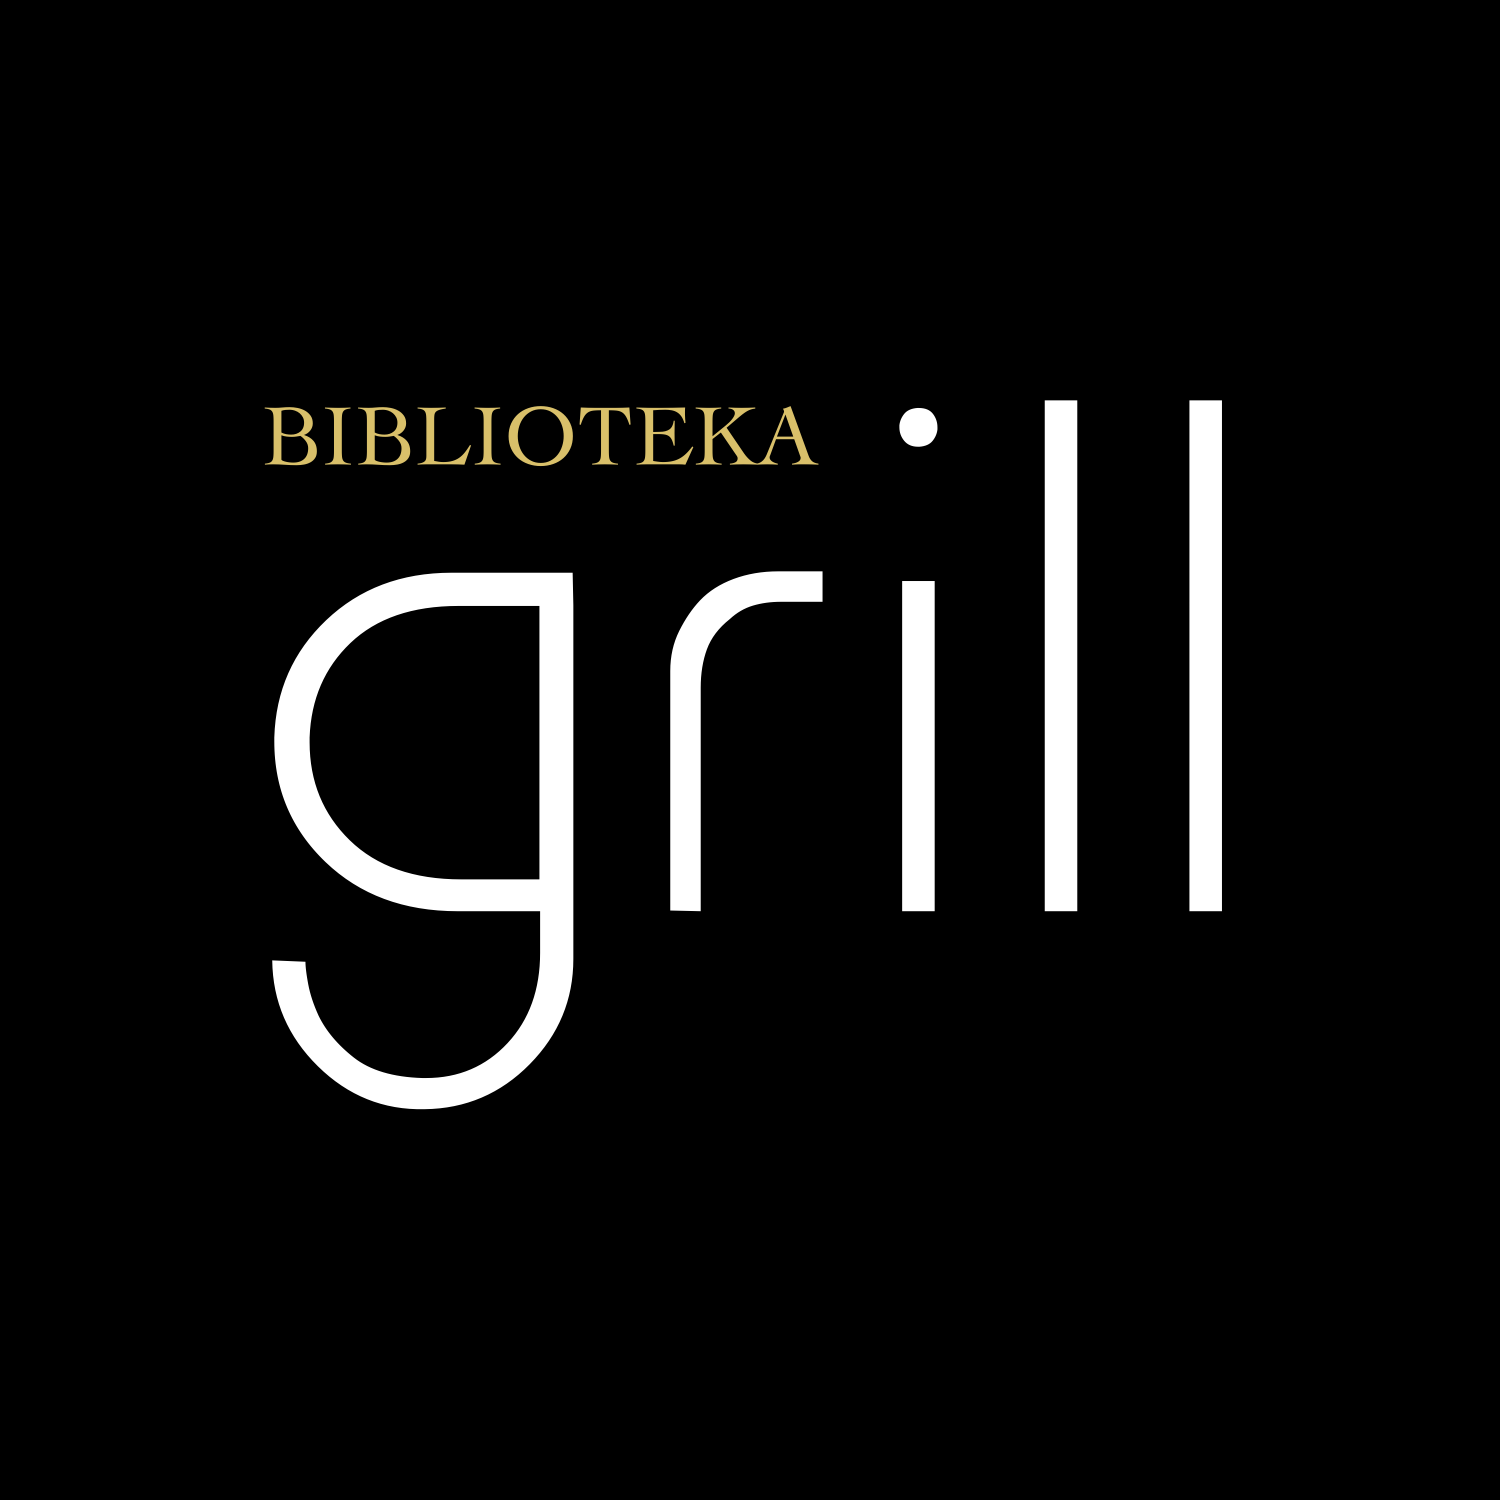 Logotipų kūrimas, logotipo dizainas verslui, restoranas BIBLIOTEKA GRILL